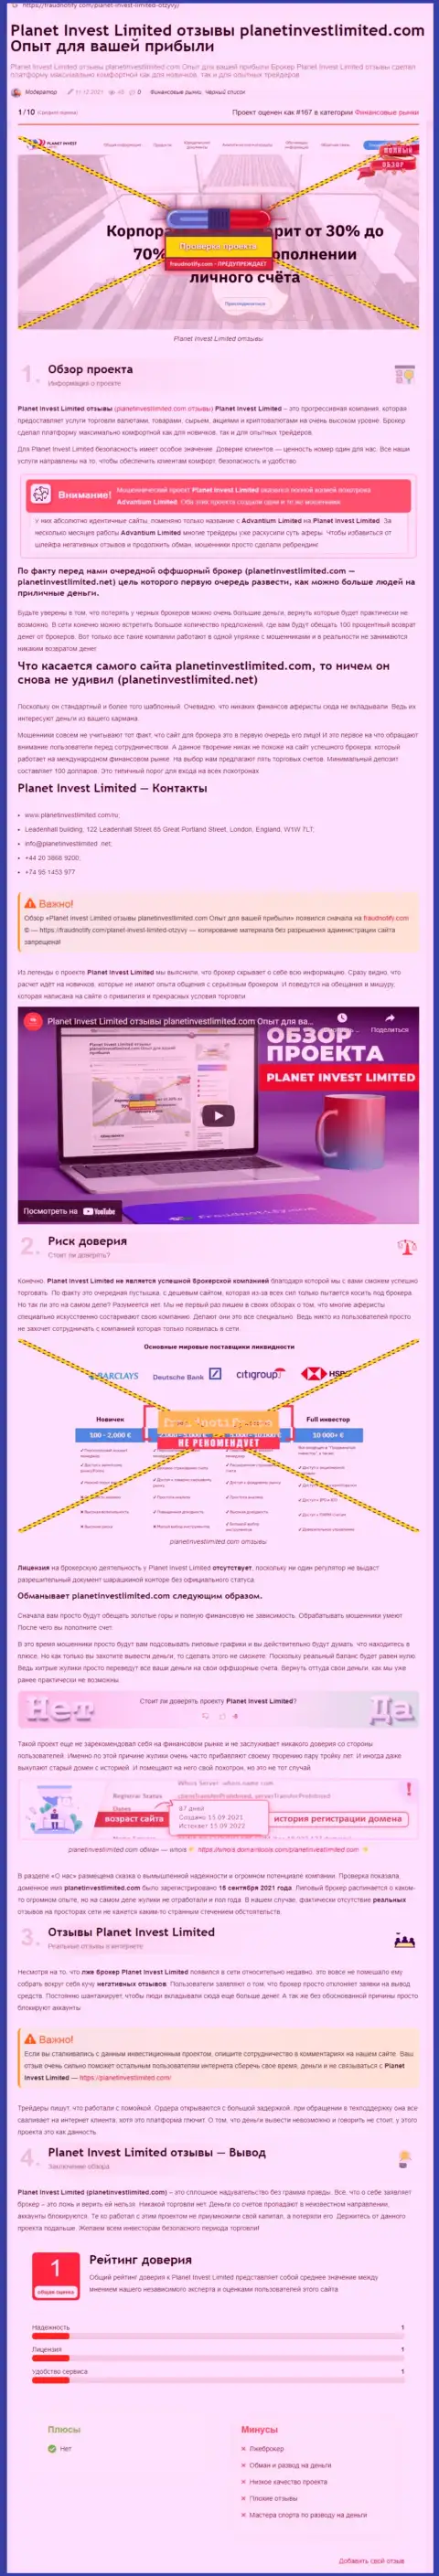 Обзор организации PlanetInvest Limited, зарекомендовавшей себя, как жулика